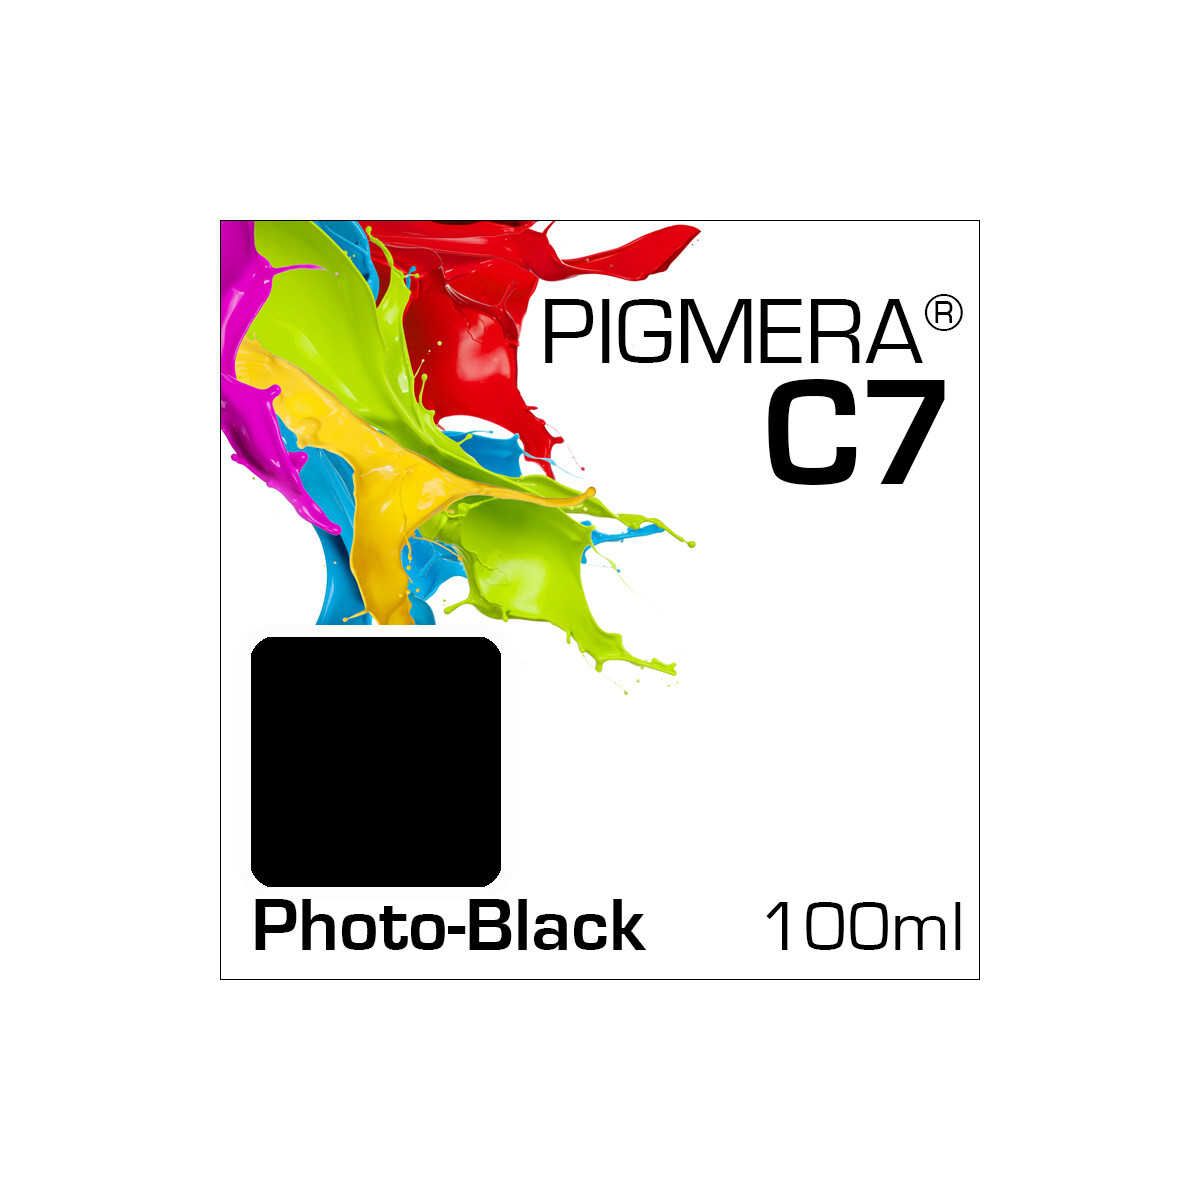 Pigmera C7 Flasche 100ml Photo-Black (Abverkauf)